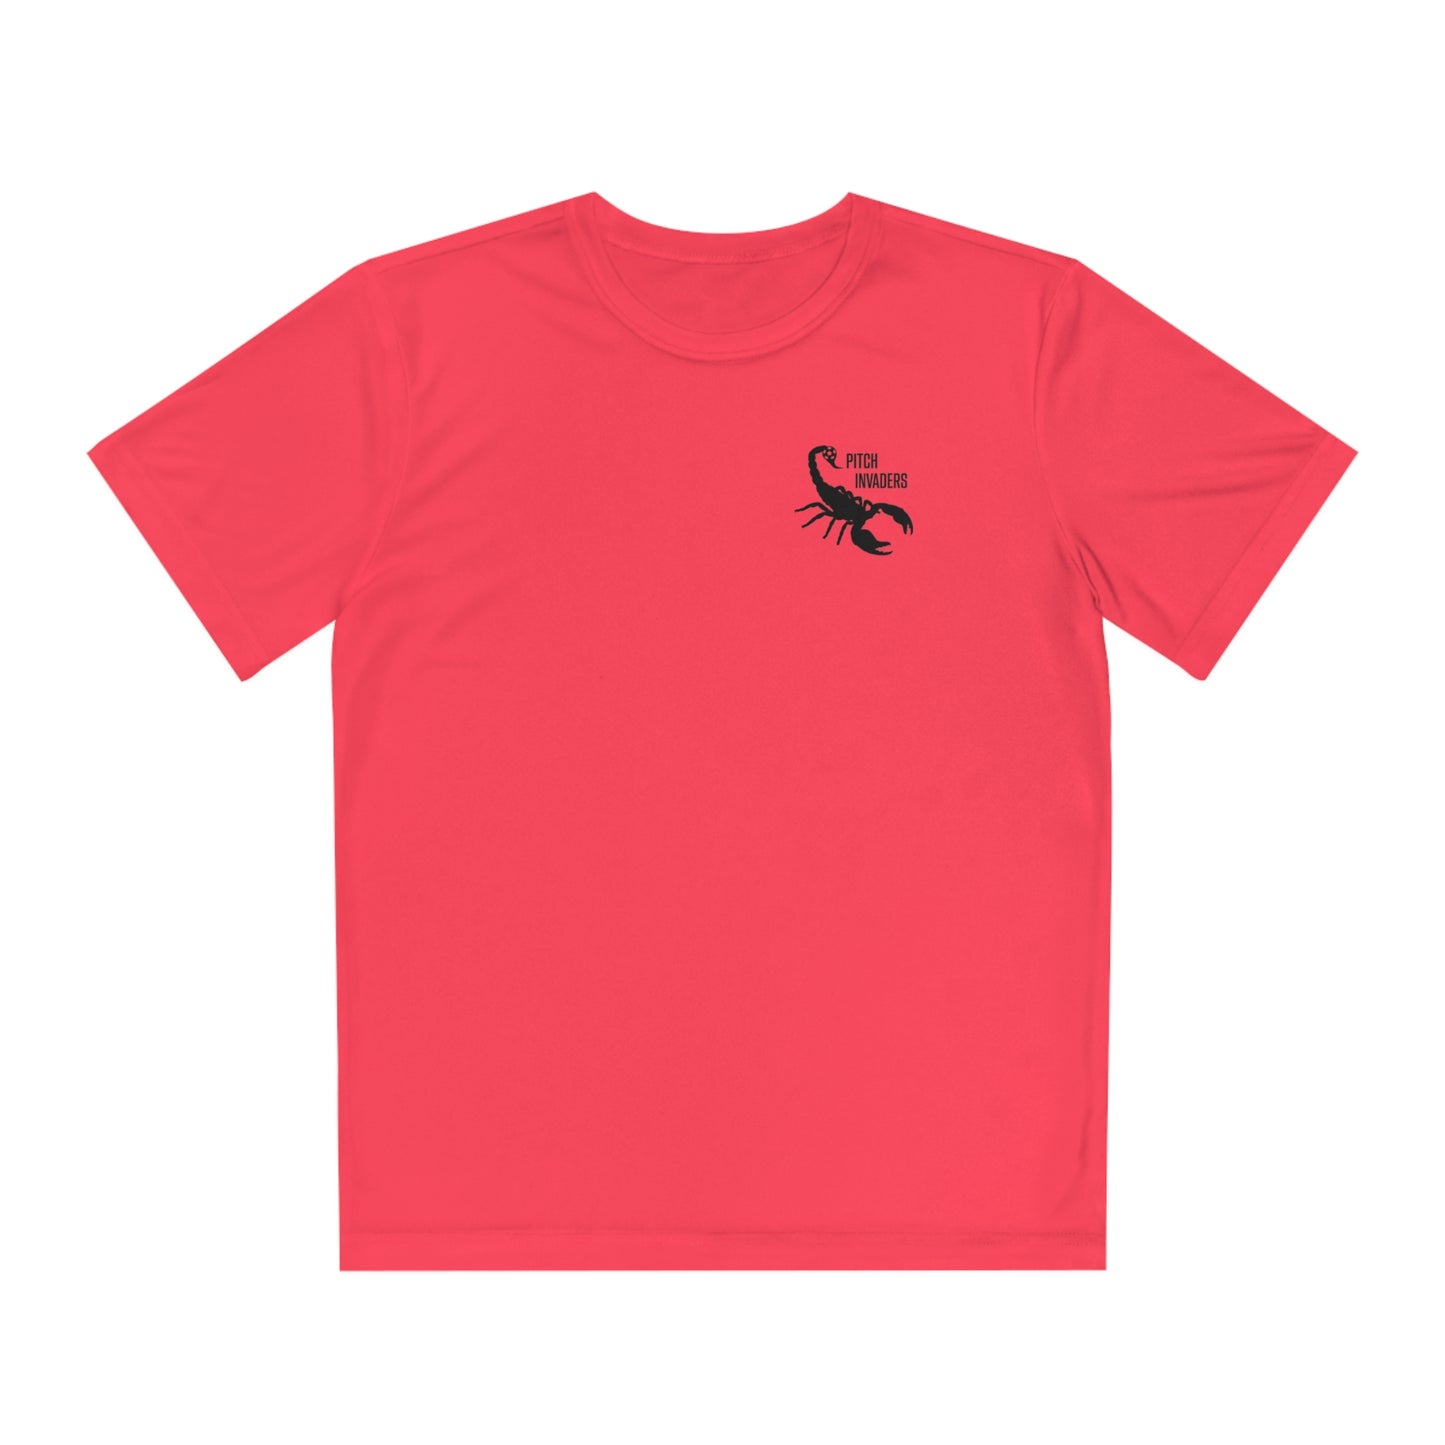 SUNDAY LEAGUE LEGEND Youth Athletic T-Shirt (Unisex)